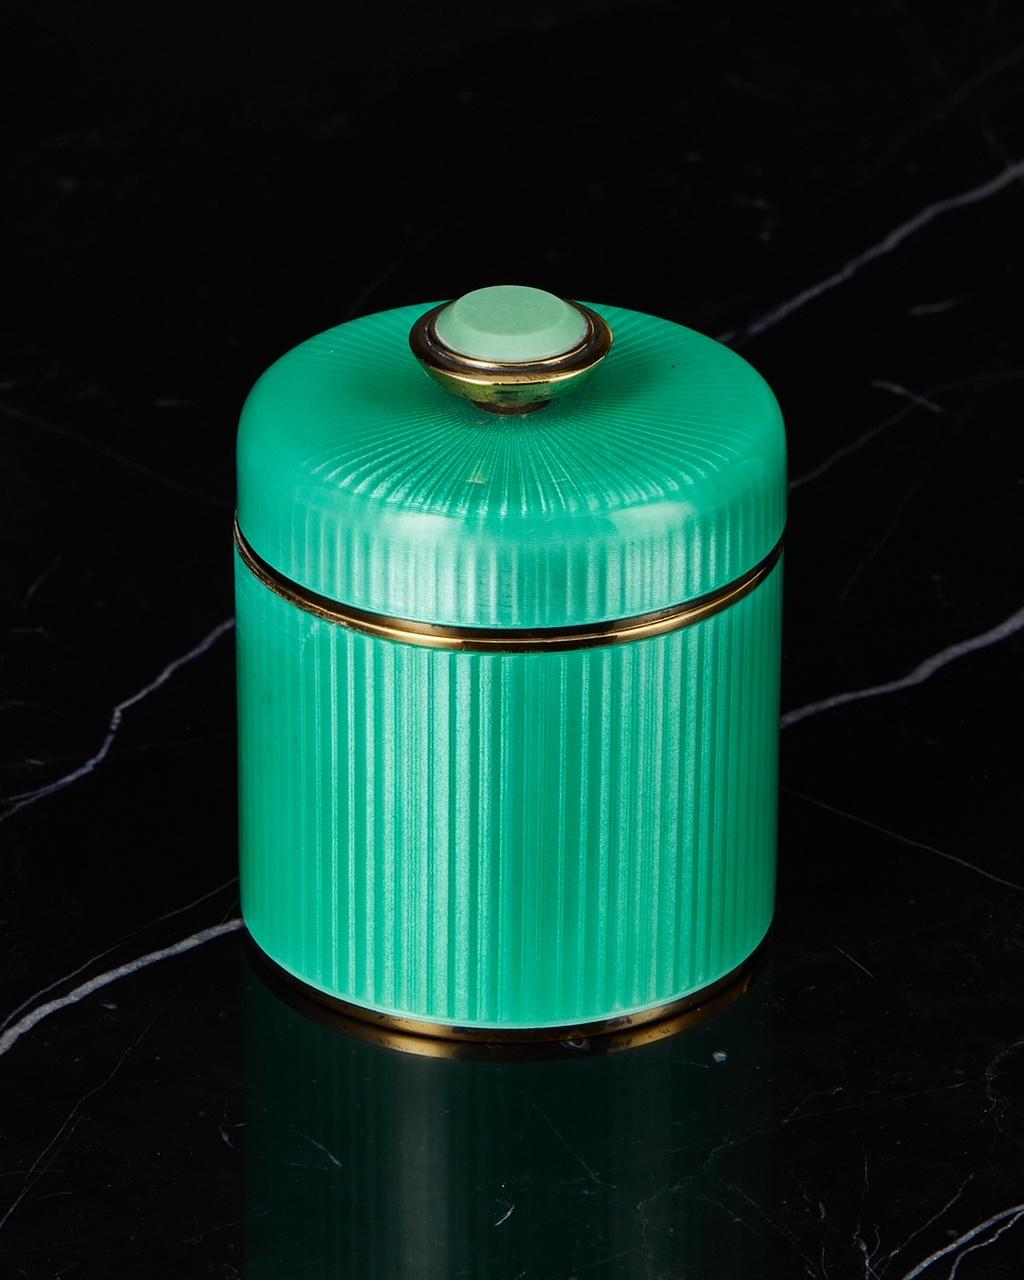 Eine wunderbare David Andersen Silber & Guilloche-Emaille-Dose des 20. Jahrhunderts mit Deckel CIRCA 1960.

Ein schönes Objekt in ausgezeichnetem Zustand. Die durchscheinende grüne Emaille ist von höchster Qualität und der Deckel sitzt perfekt.